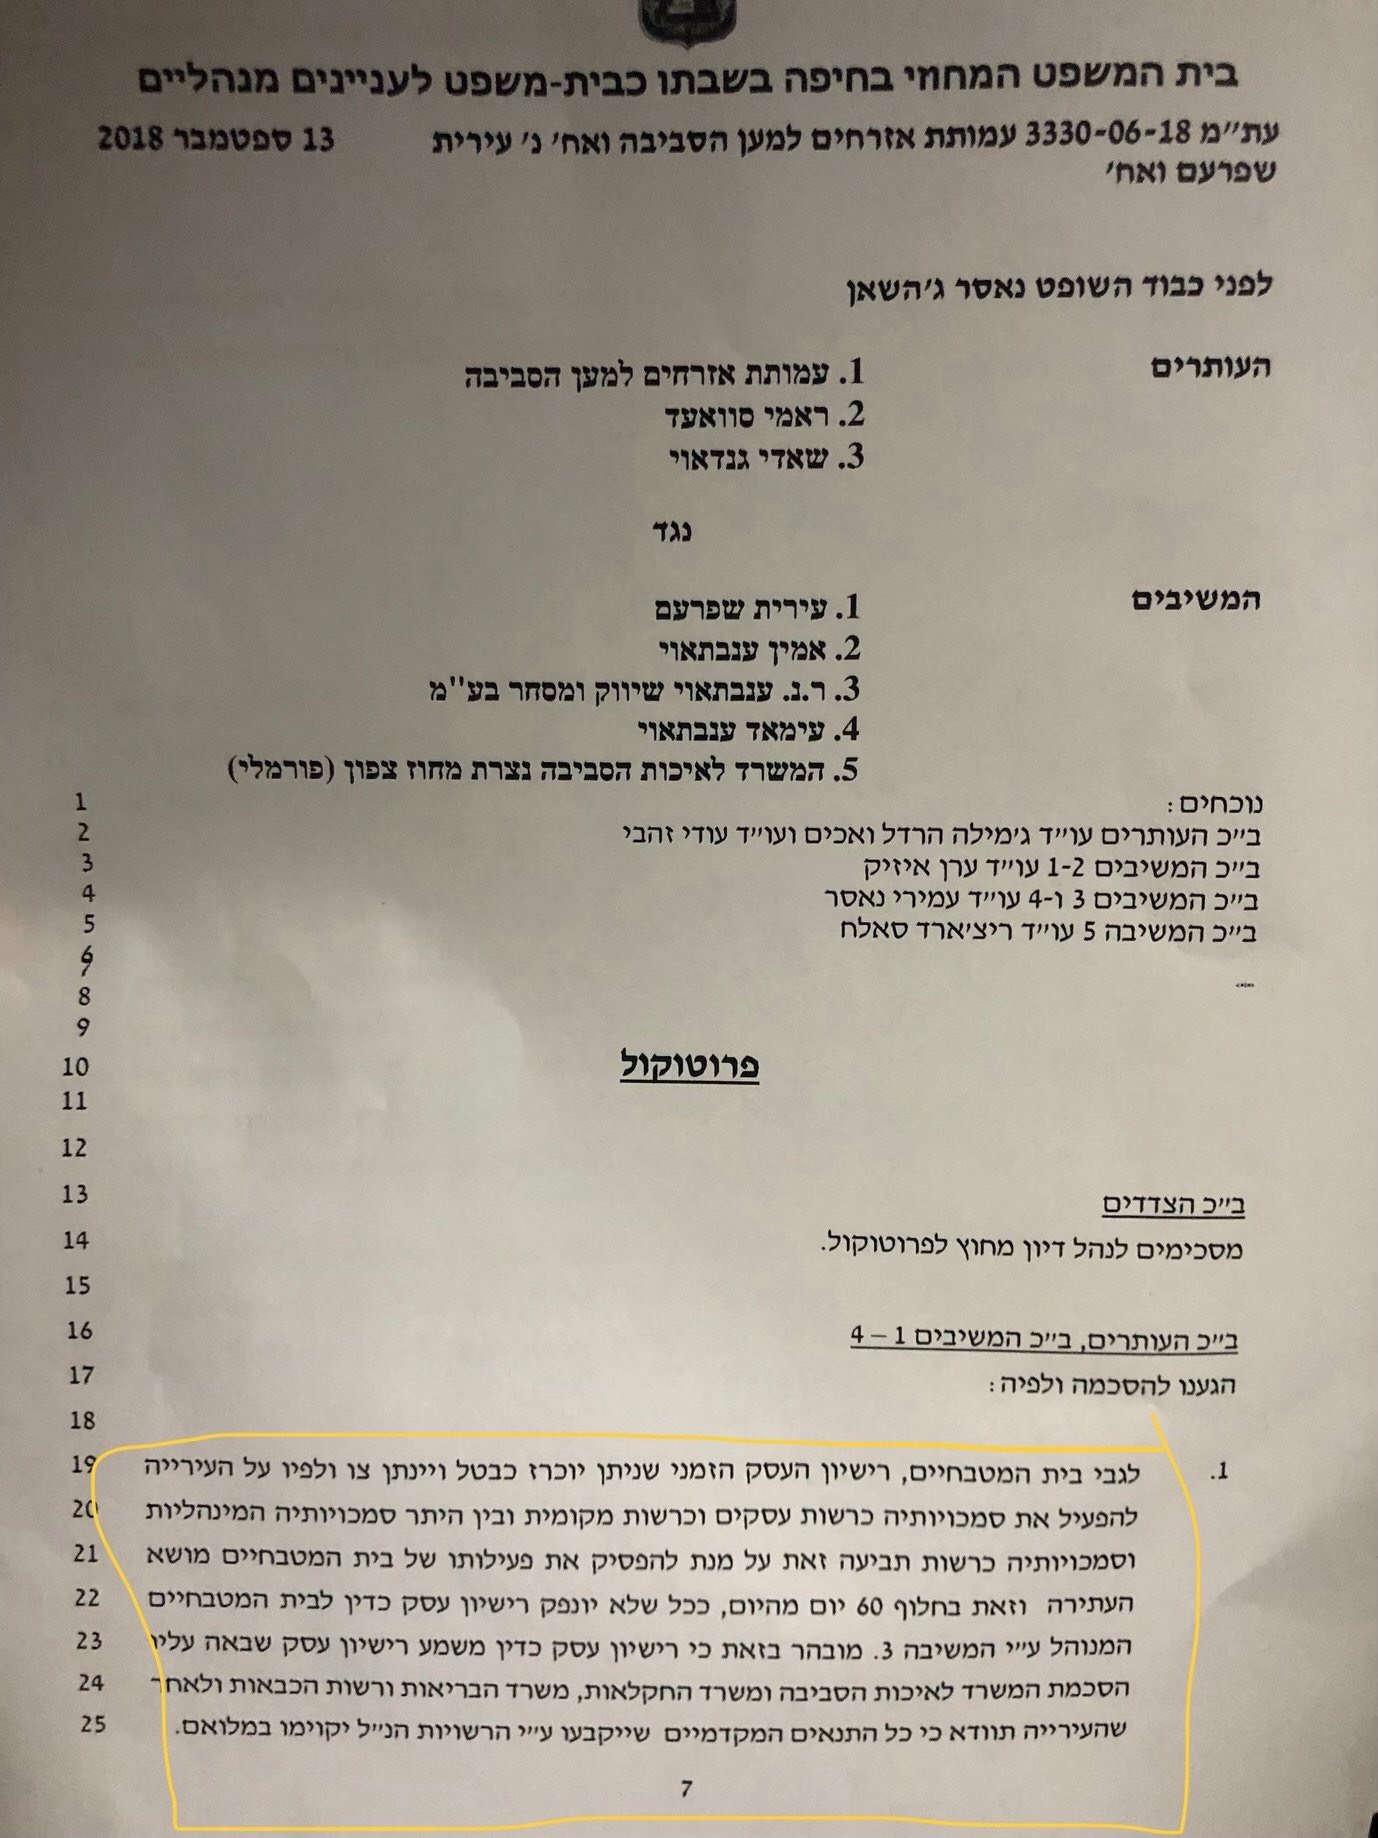 مركزيّة حيفا تقرّ إلغاء رخصة المسلخ البلدي في شفاعمرو-2